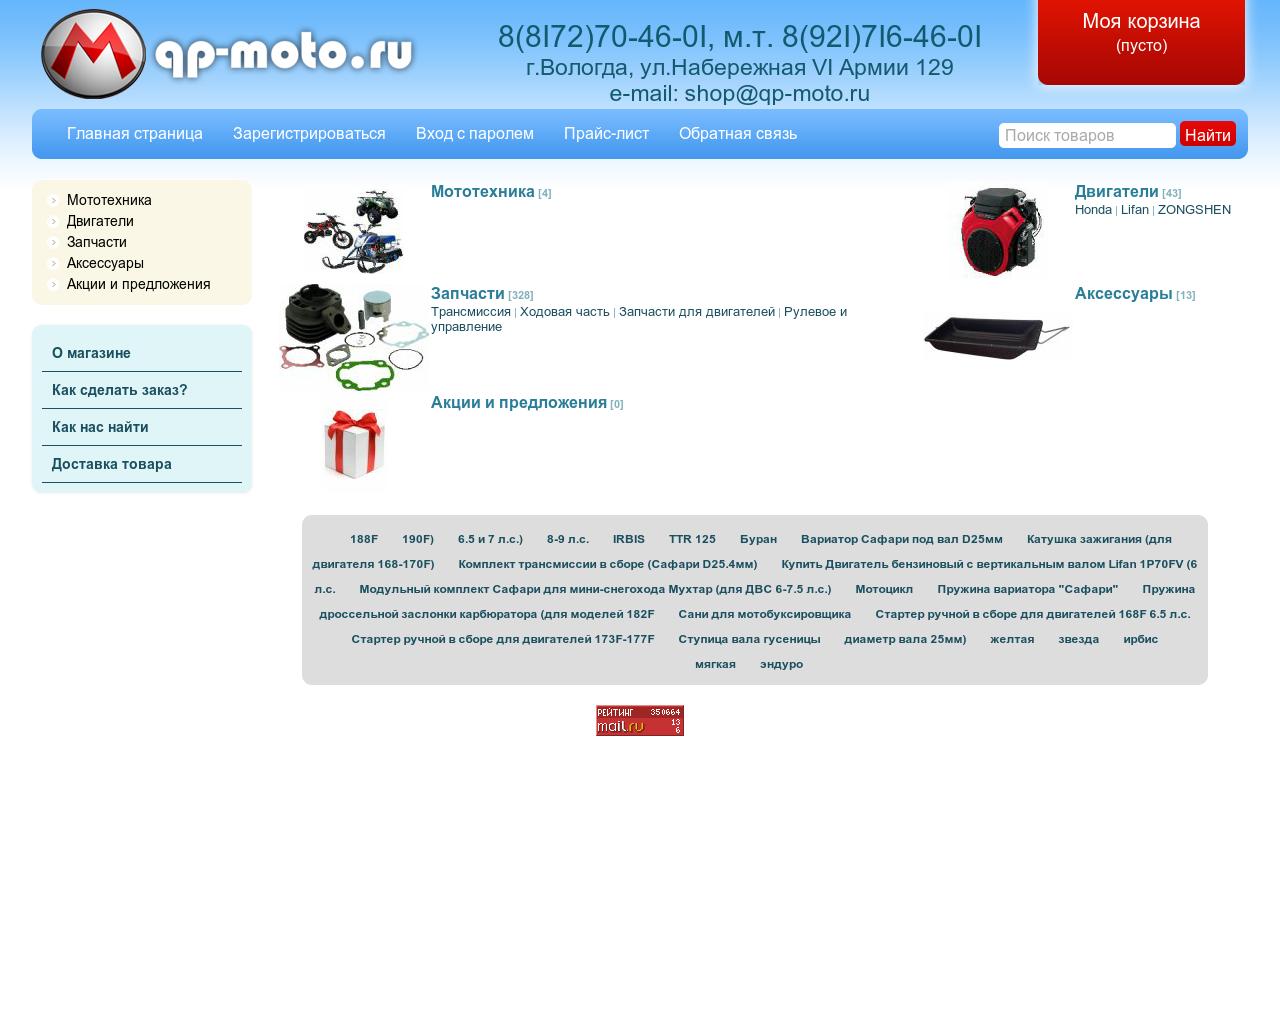 Изображение сайта qp-moto.ru в разрешении 1280x1024